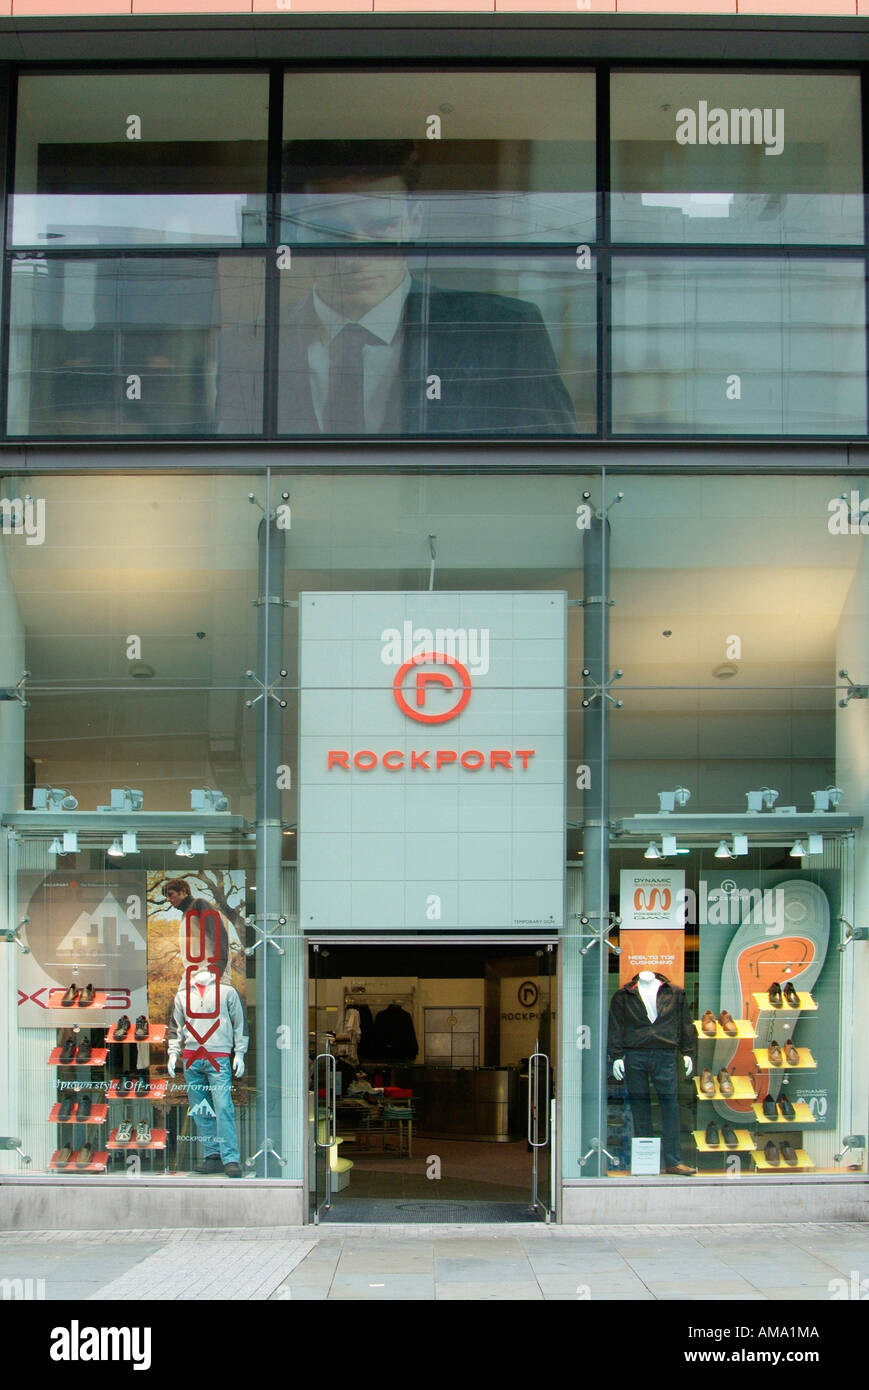 Rockport boutique sign magasin de vente au détail UK Angleterre Europe Go  Grande-bretagne UE Union européenne marque logo sign Photo Stock - Alamy